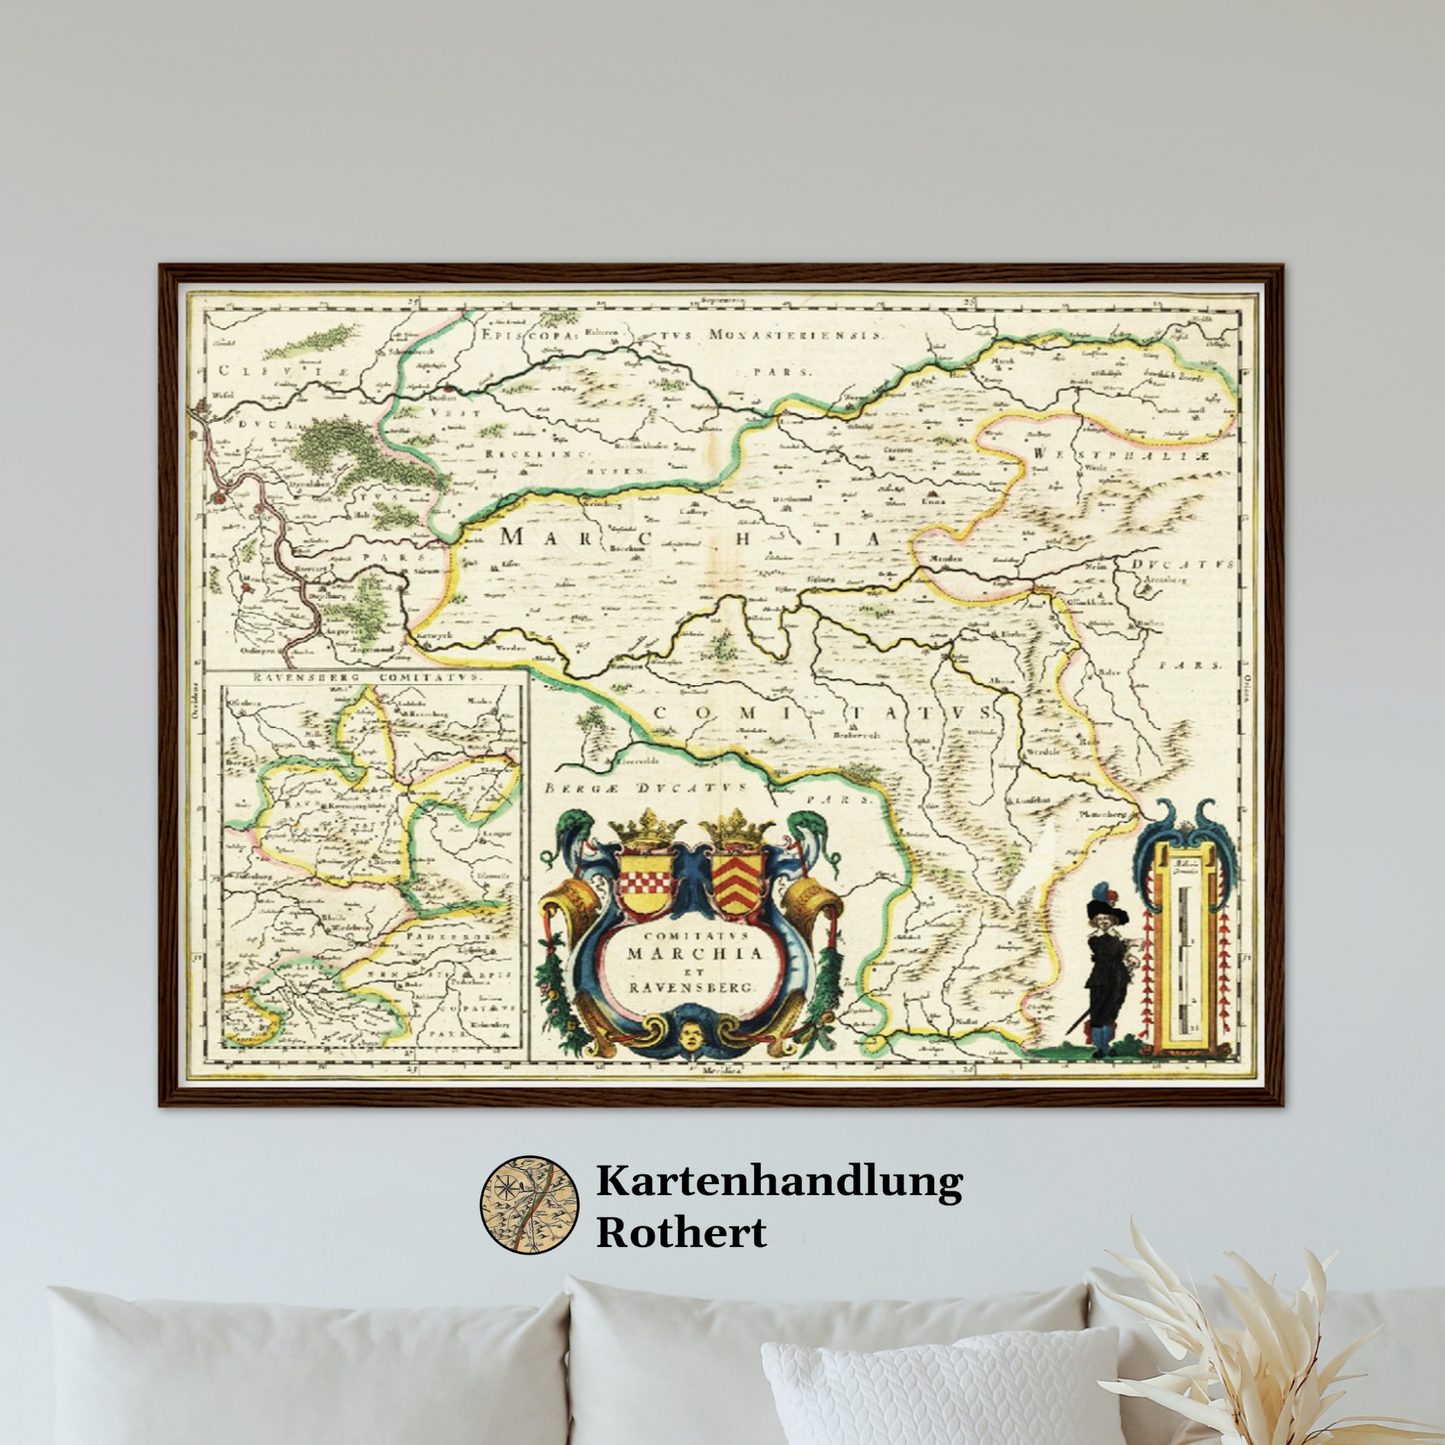 Historische Landkarte Ravensburg um 1647